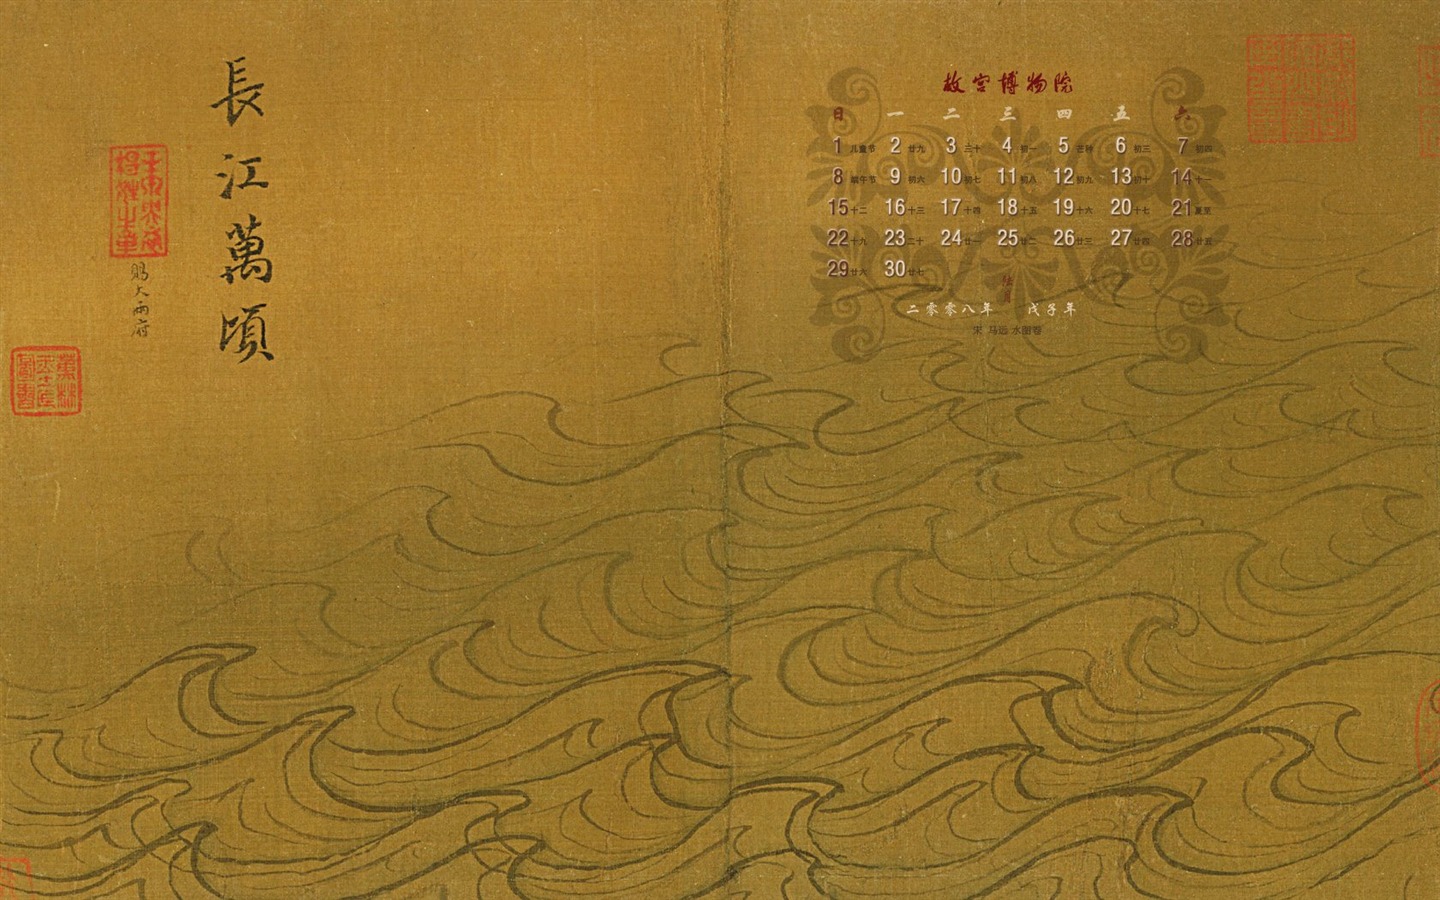 北京故宫博物院 文物展壁纸(二)13 - 1440x900